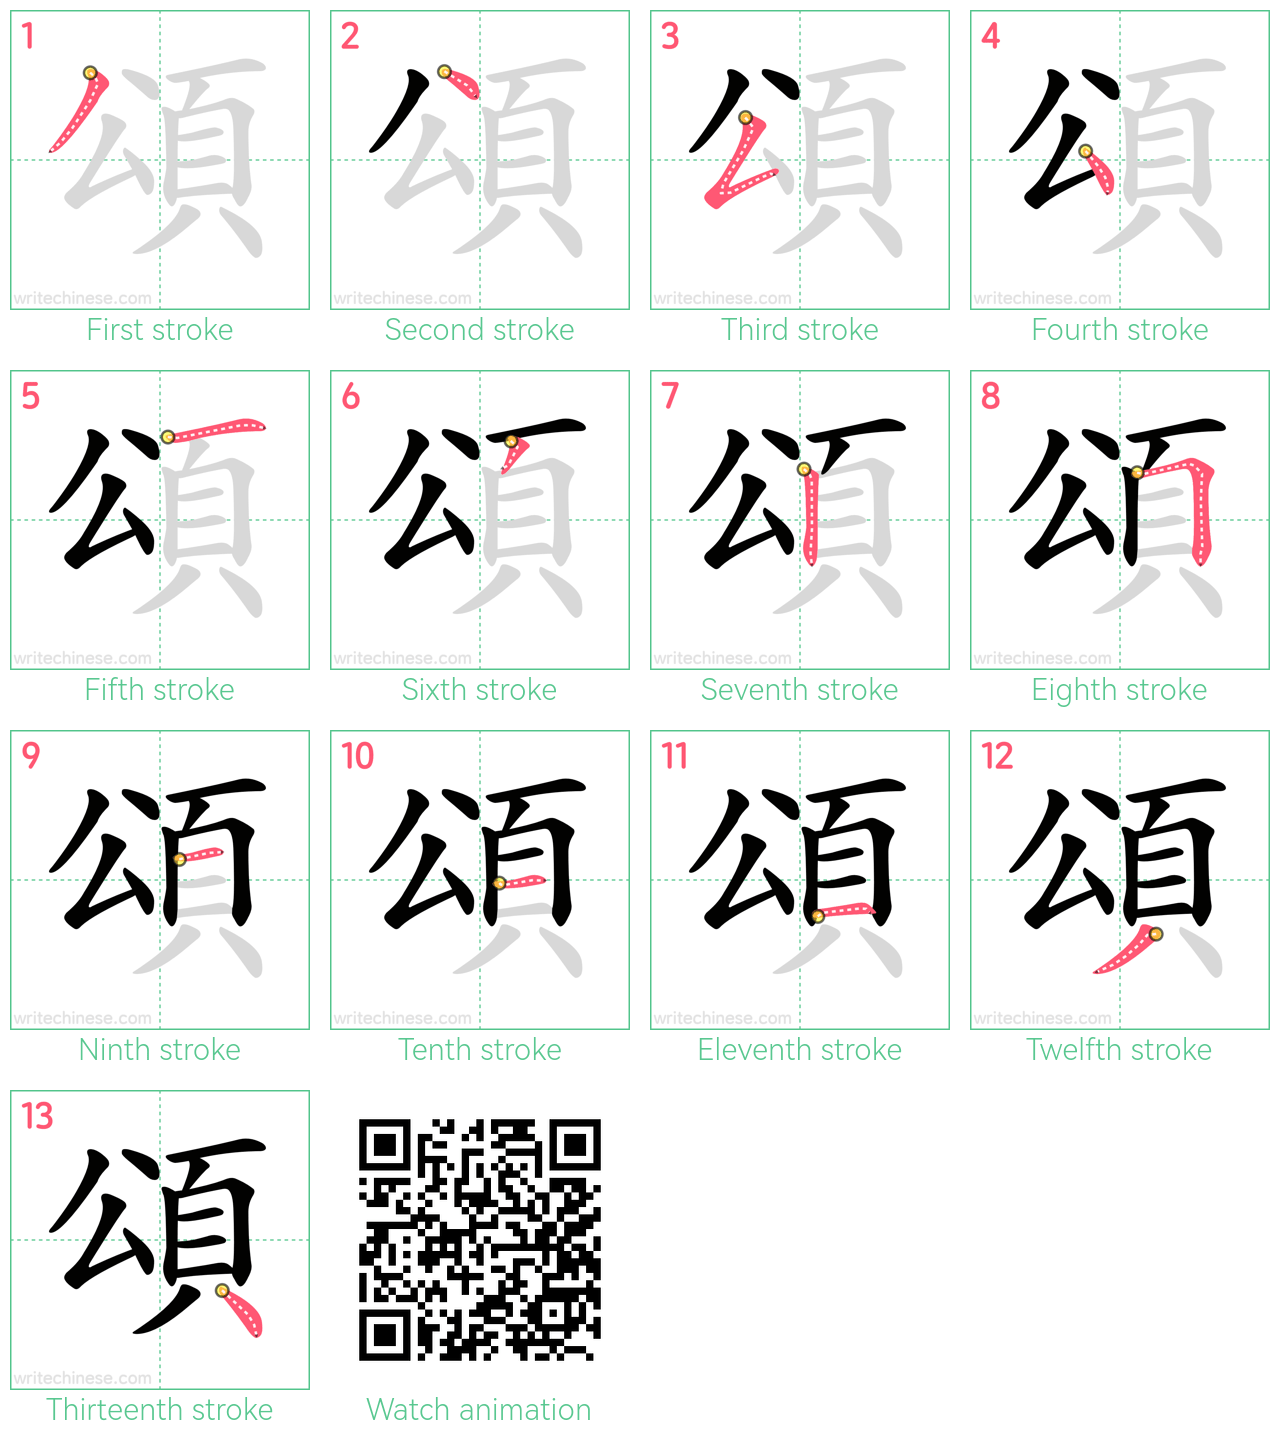 頌 step-by-step stroke order diagrams